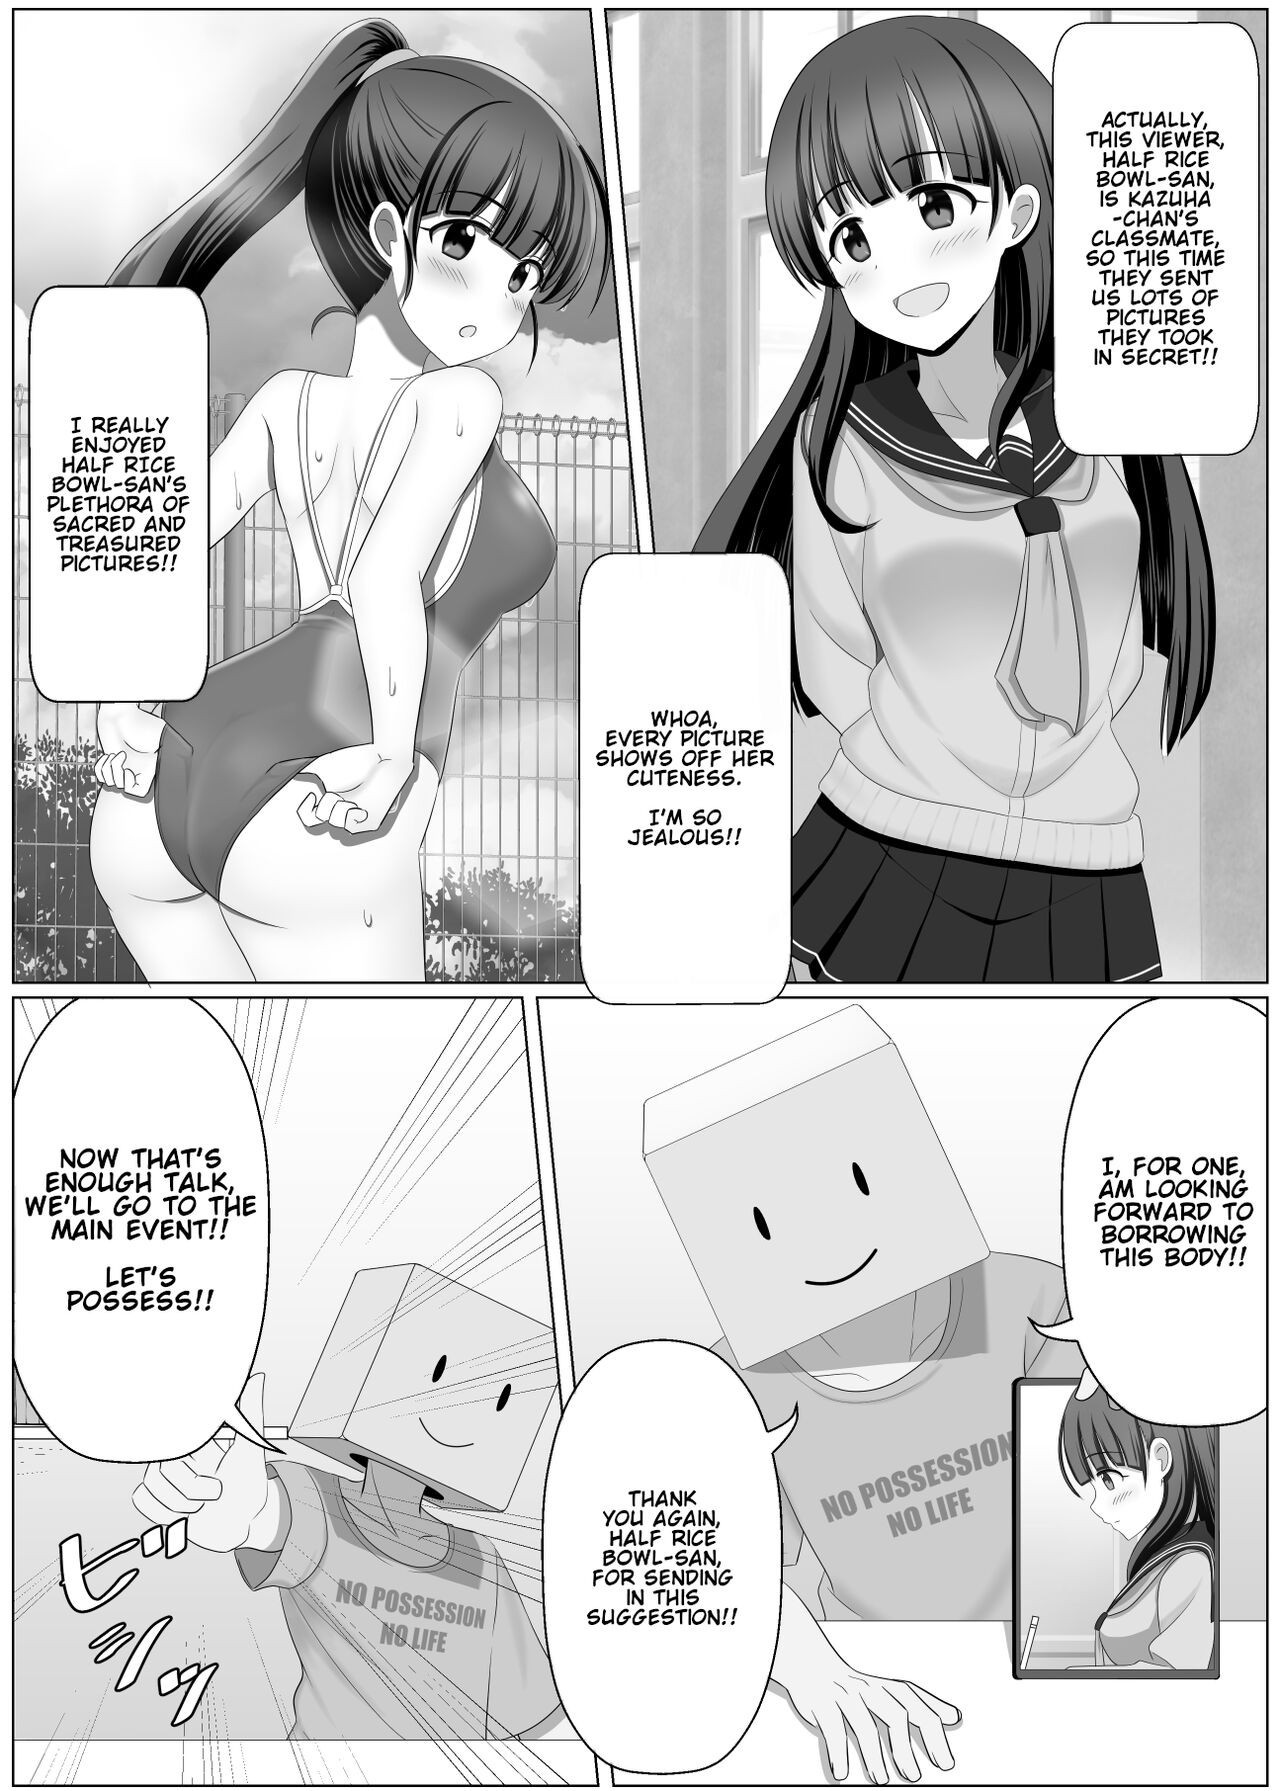 Possession manga hentai